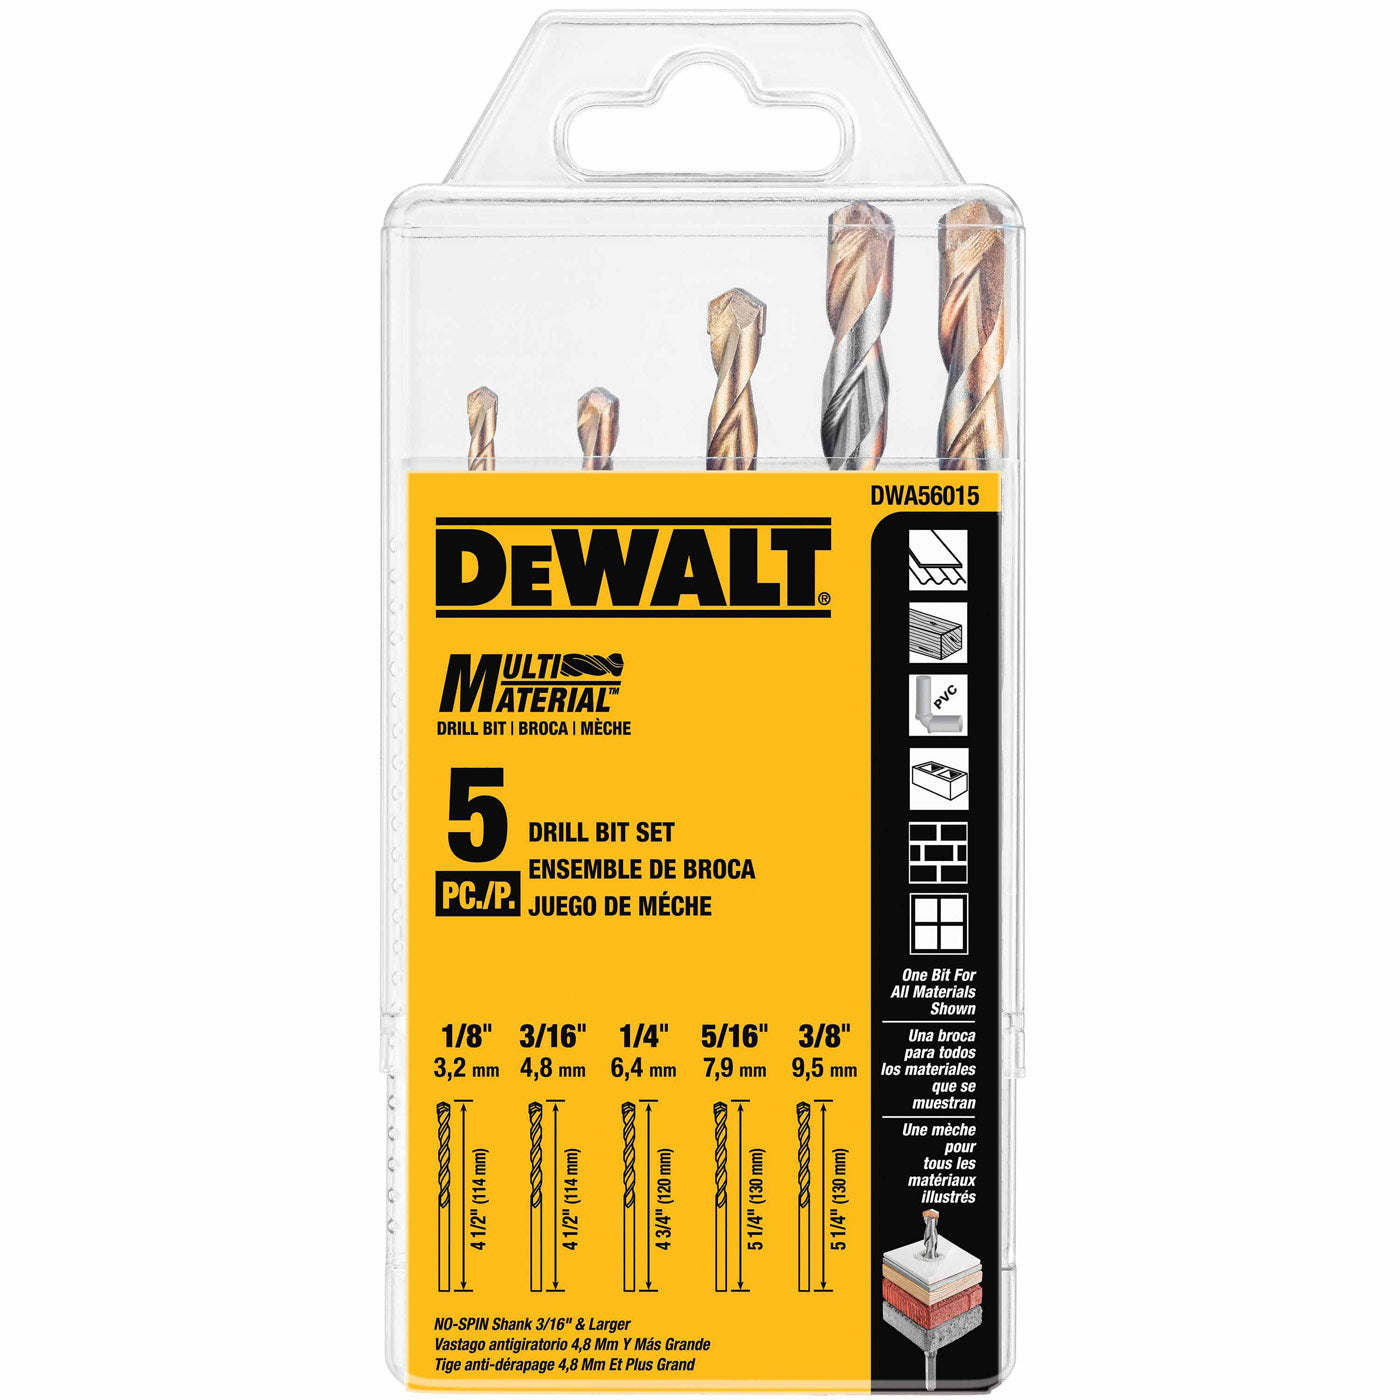 DeWalt DWA56015 5-Pc. Multi Material Drill Bit Set (1/8", 3/16", 1/4", 5/16", 3/8")